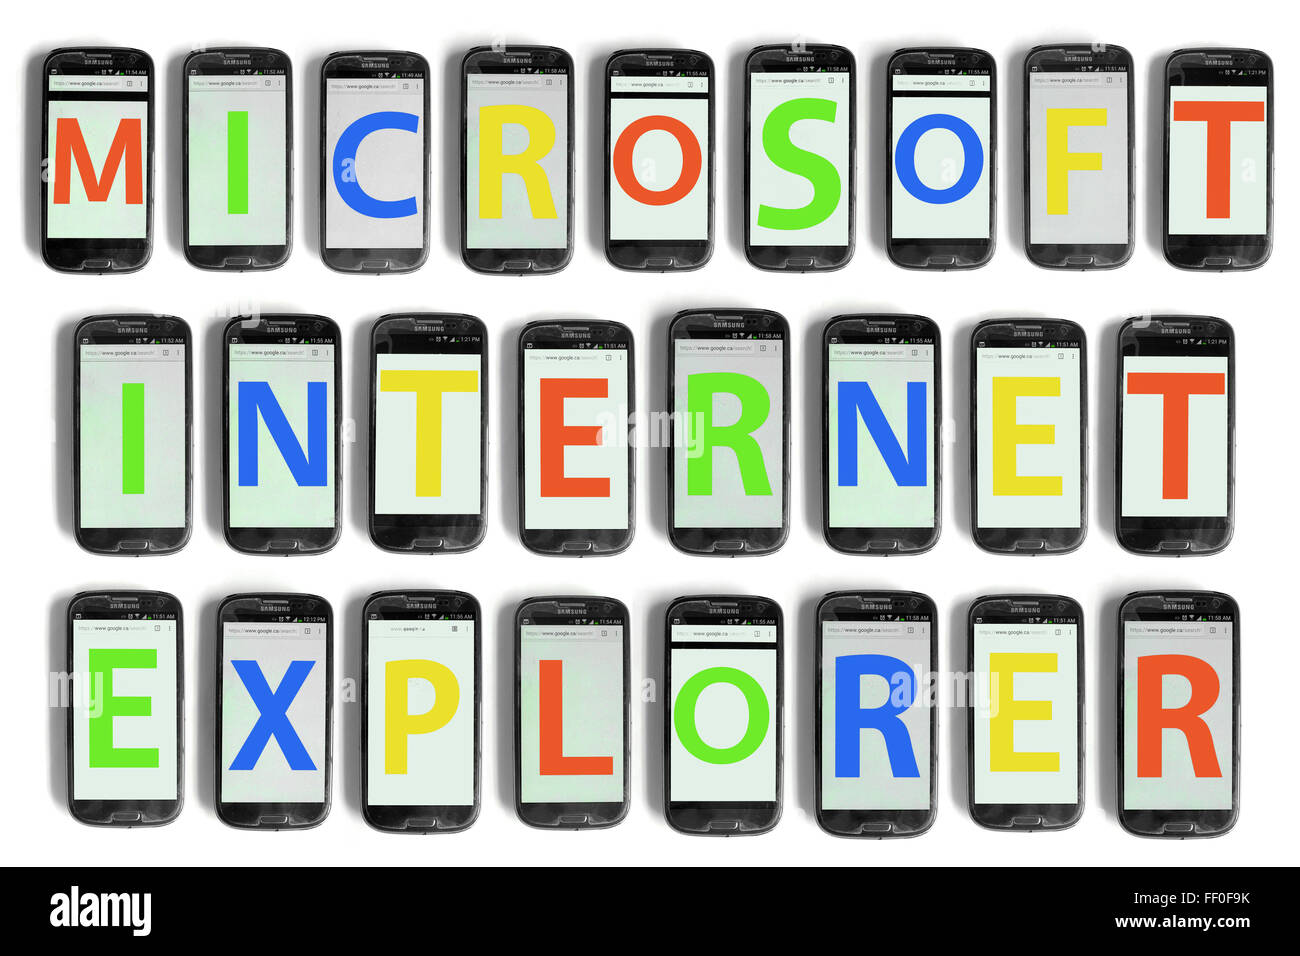 Microsoft Internet Explorer X geschrieben auf den Bildschirmen der Smartphones vor weißem Hintergrund fotografiert. Stockfoto